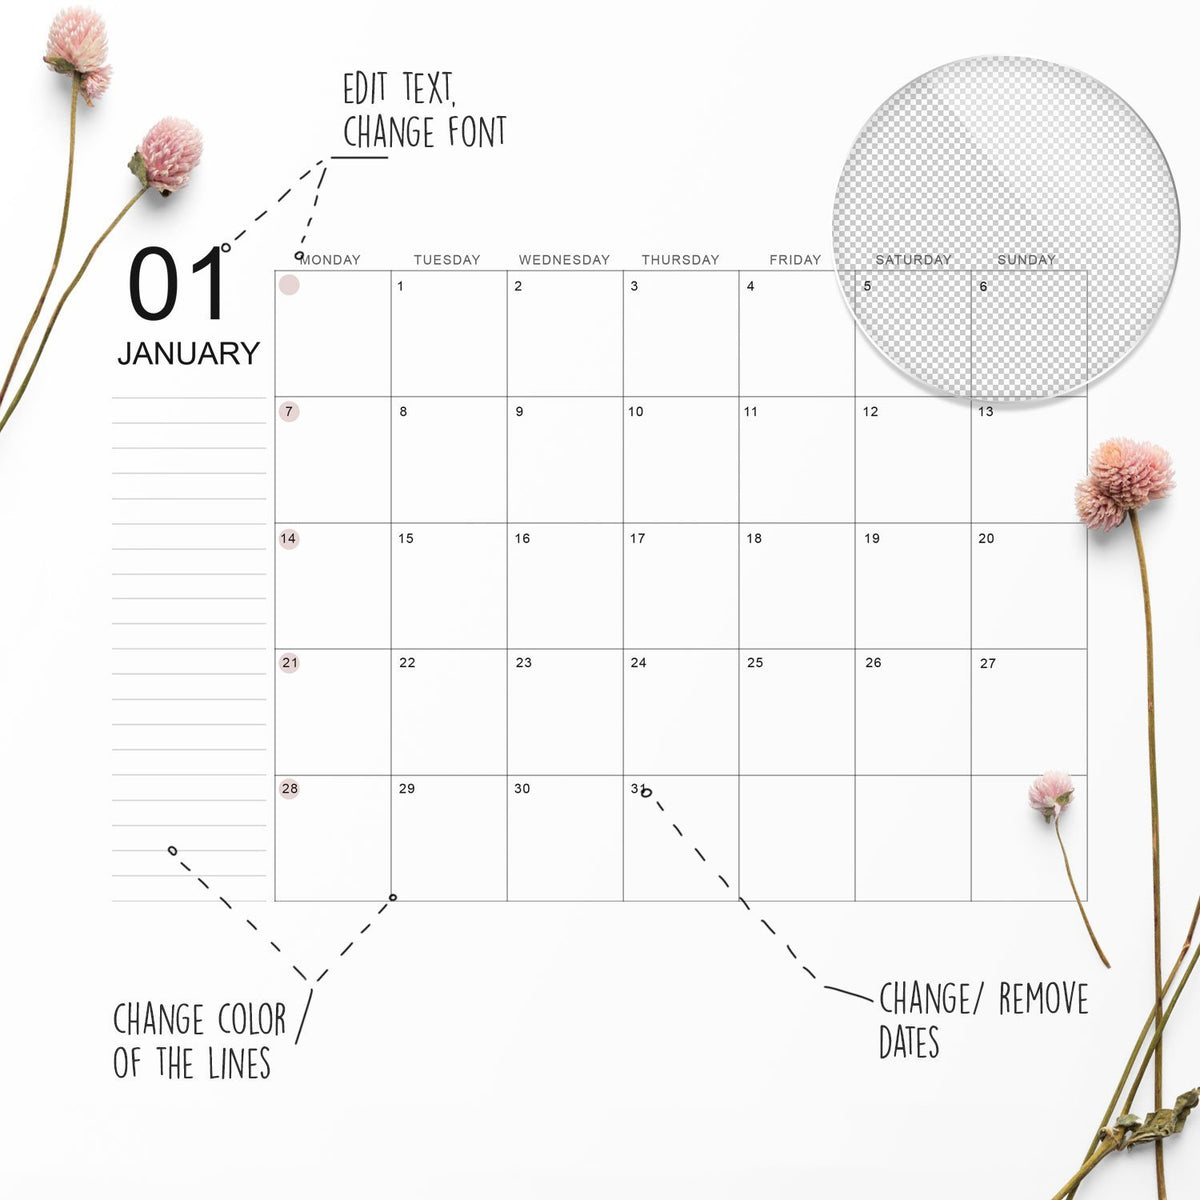 Editable Monthly Calendar template Landscape PSD Procreate